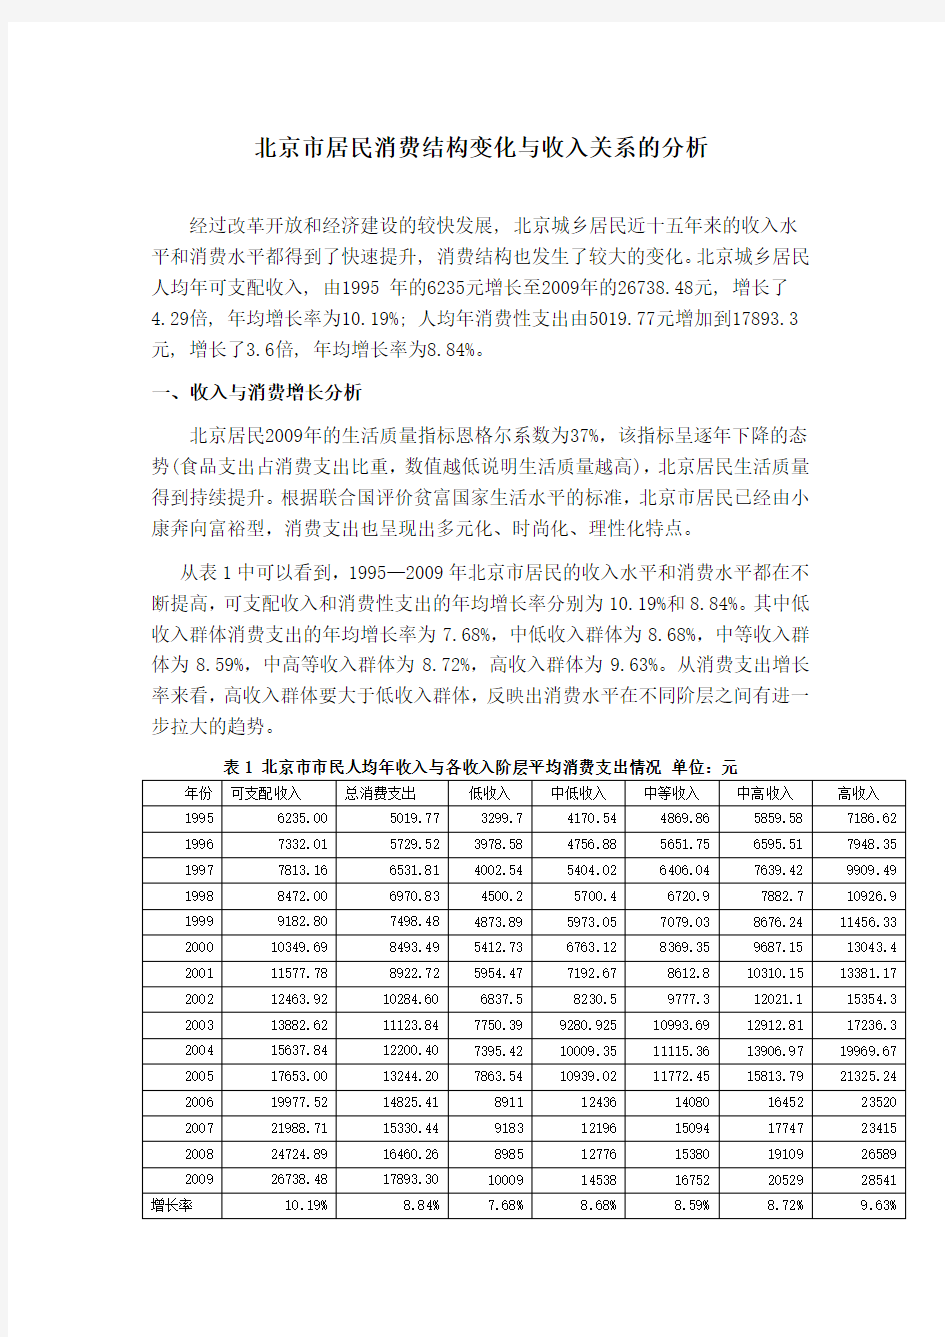 北京市居民消费结构变化与收入关系的分析